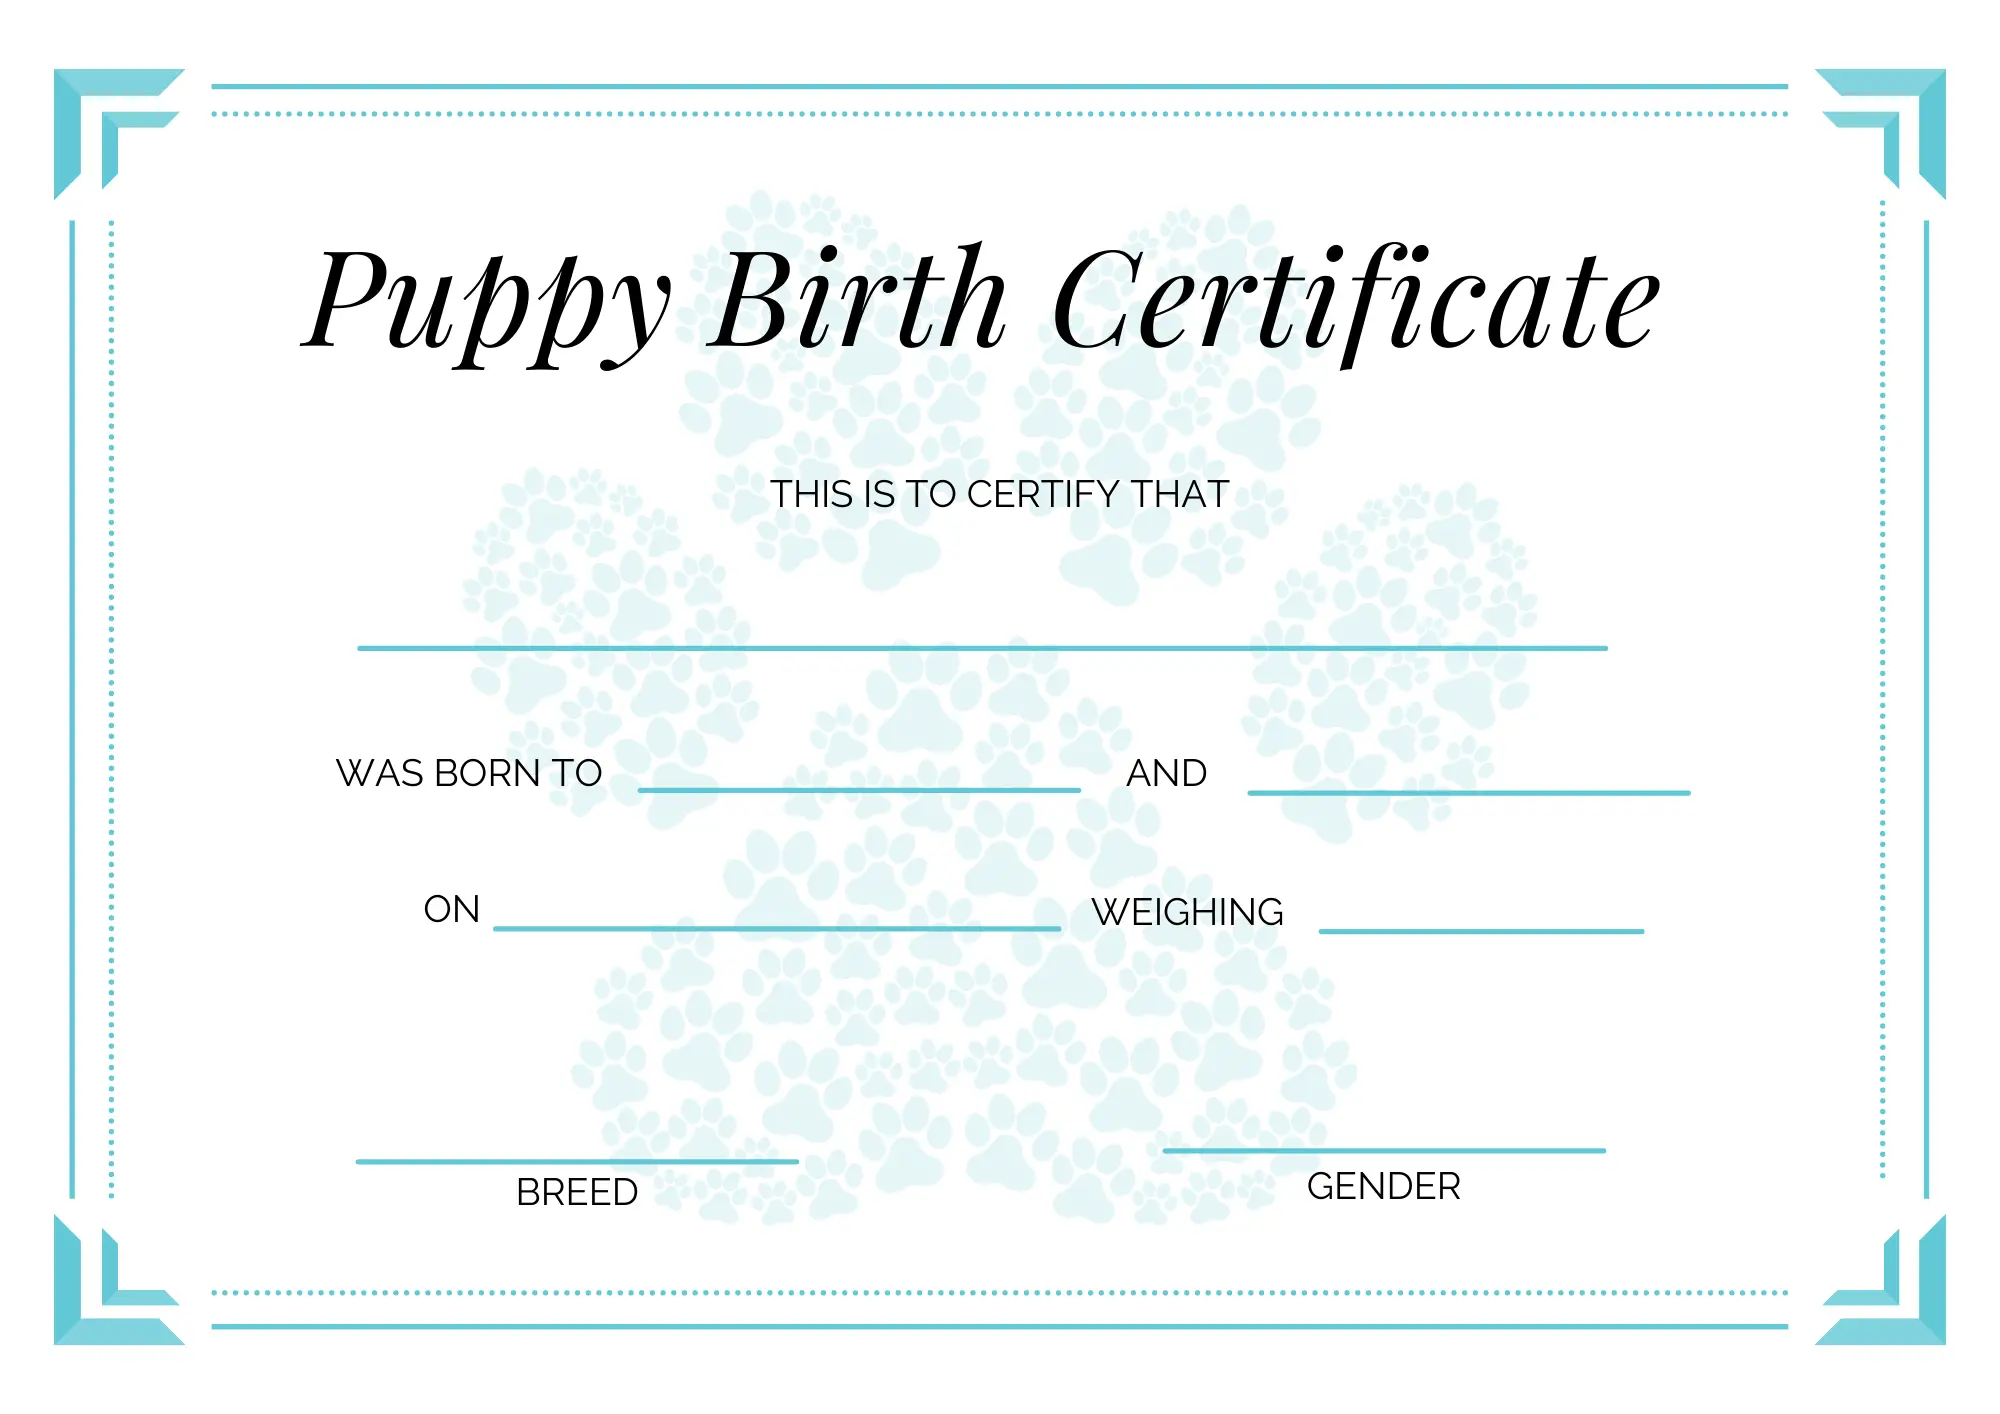 cuddla-puppy-birth-certificate-blue